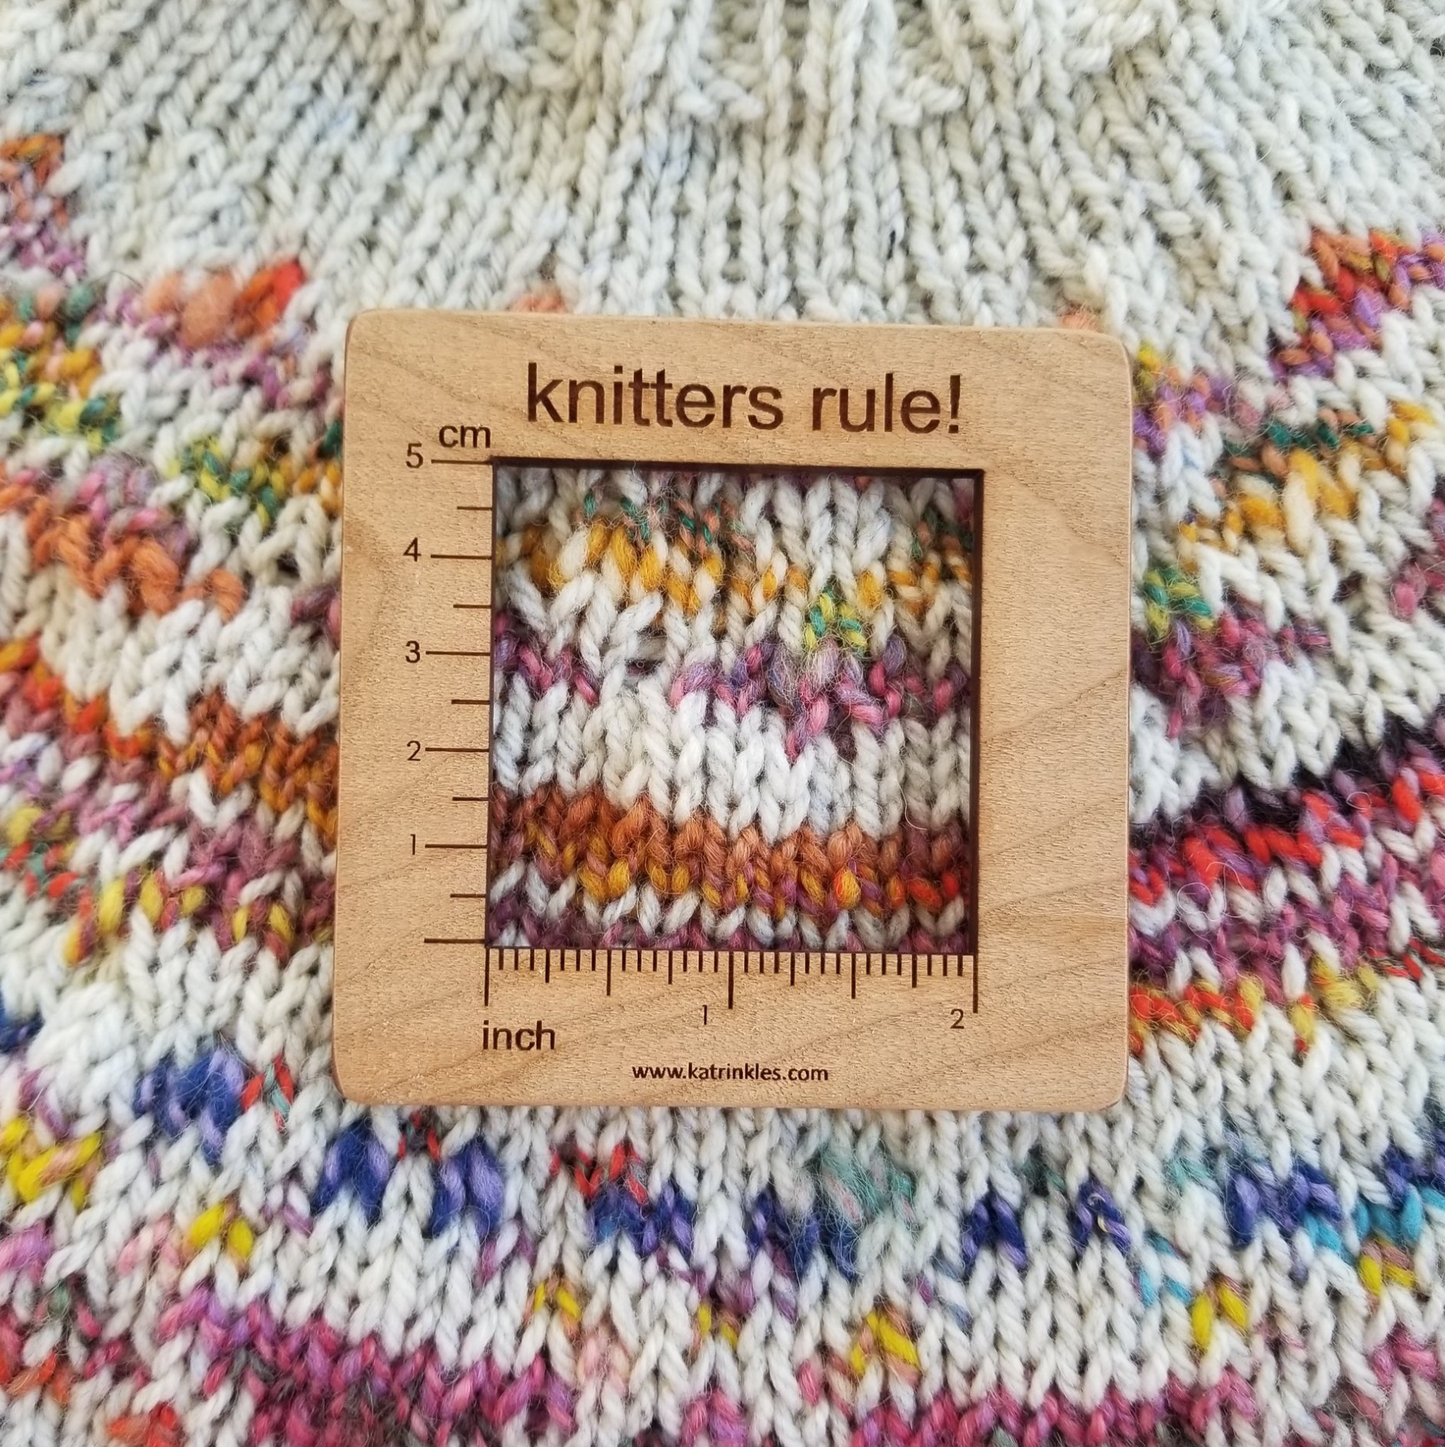 Katrinkles - Yarn Loop 2 Swatch Gauge & Needle Gauge